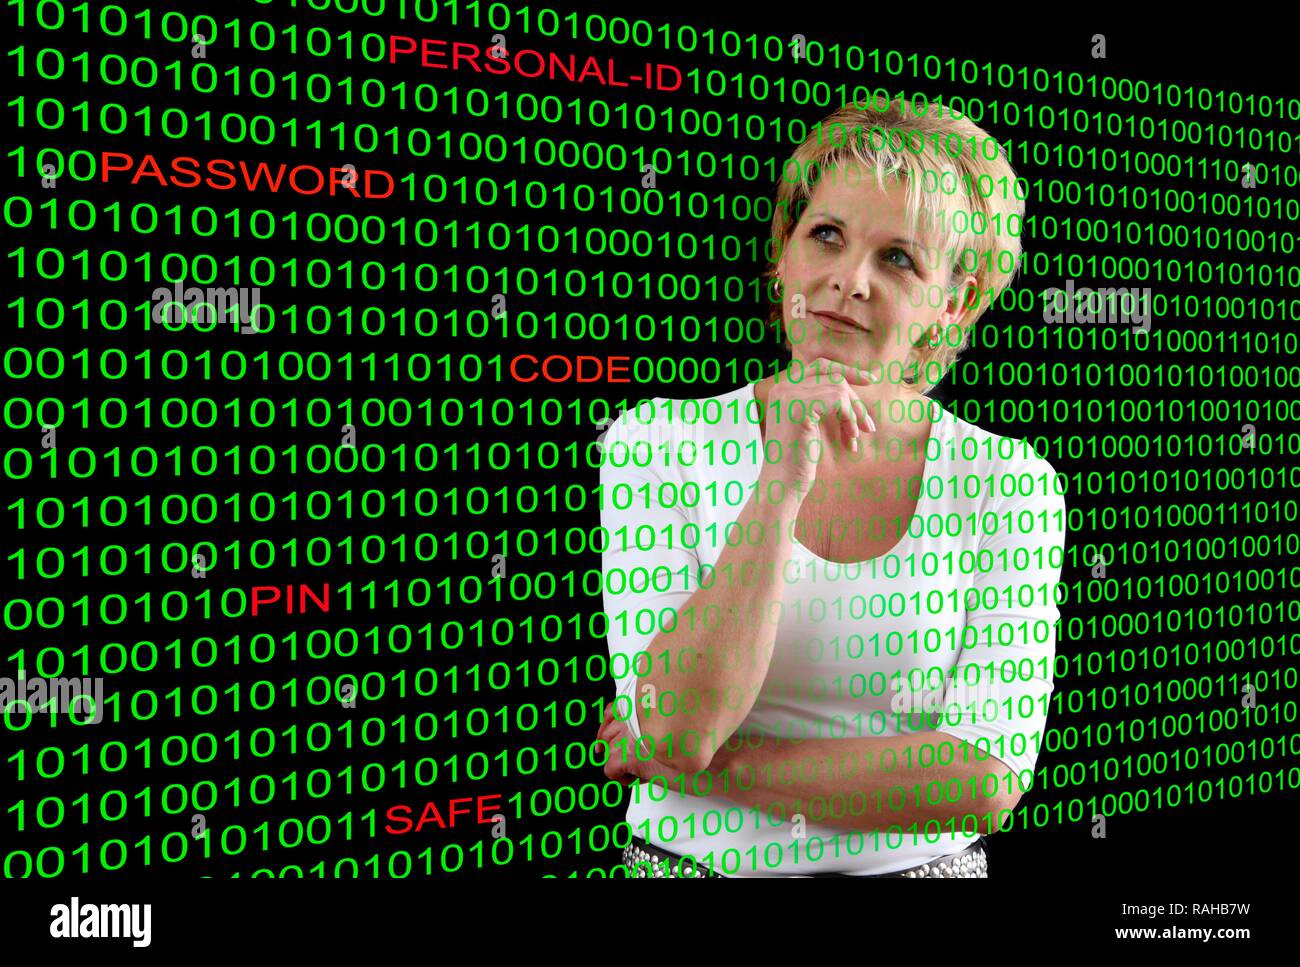 Una donna con il codice del computer e le parole evidenziate Personal-ID, password, codice PIN e cassaforte, immagine simbolica per computer Foto Stock